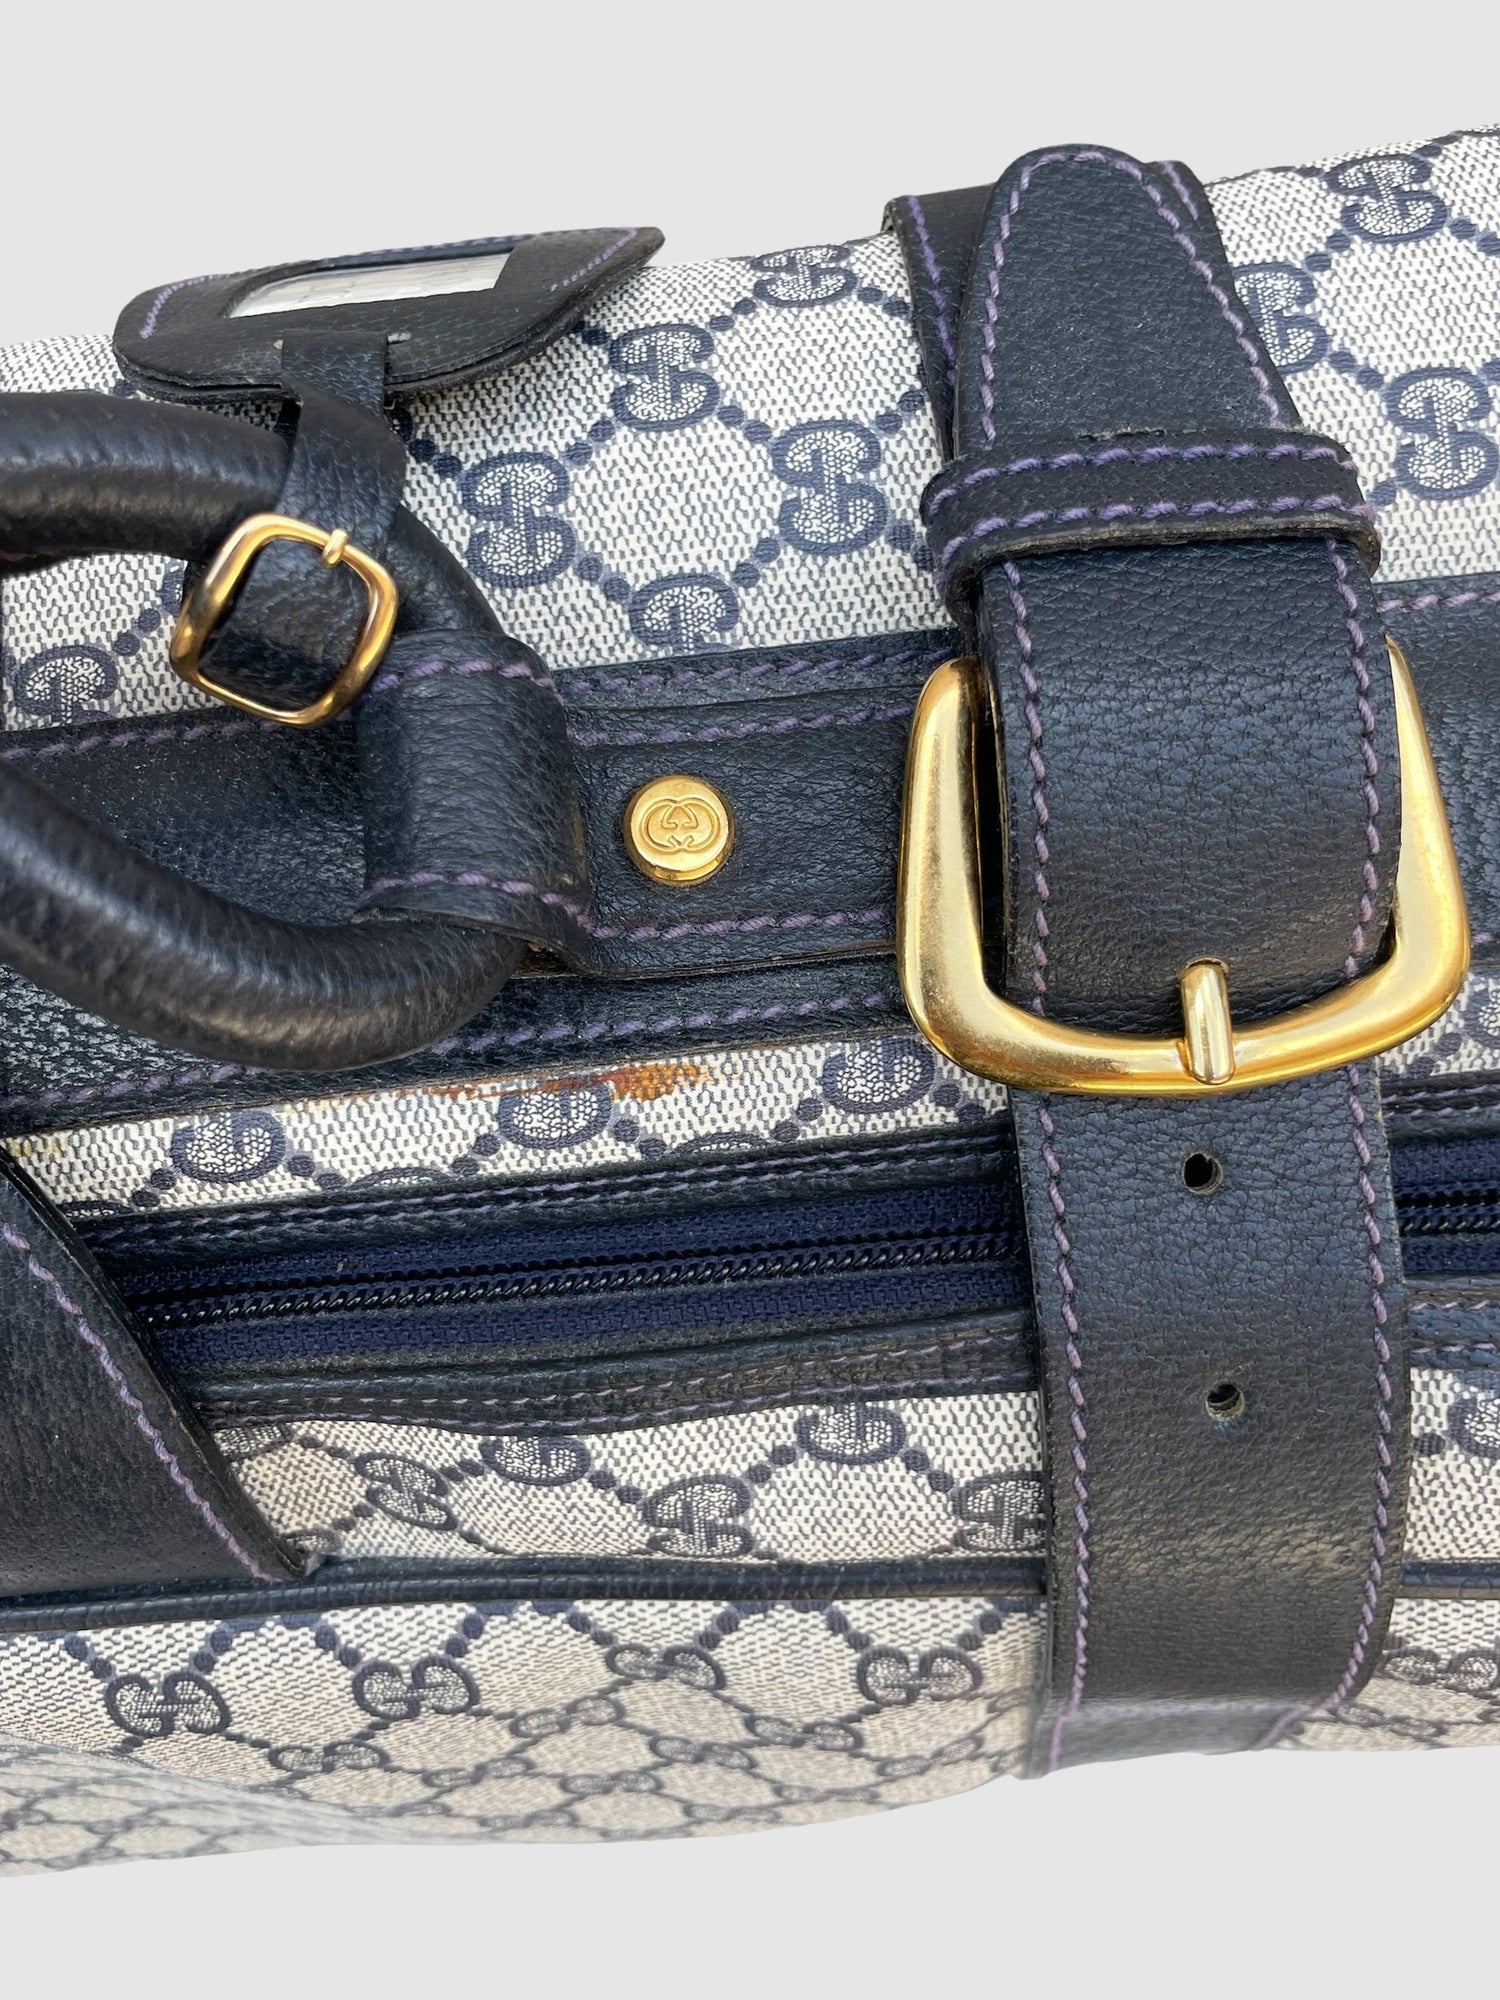 Gucci Vintage Suitcase Travel Bag Medium - Second Nature Boutique